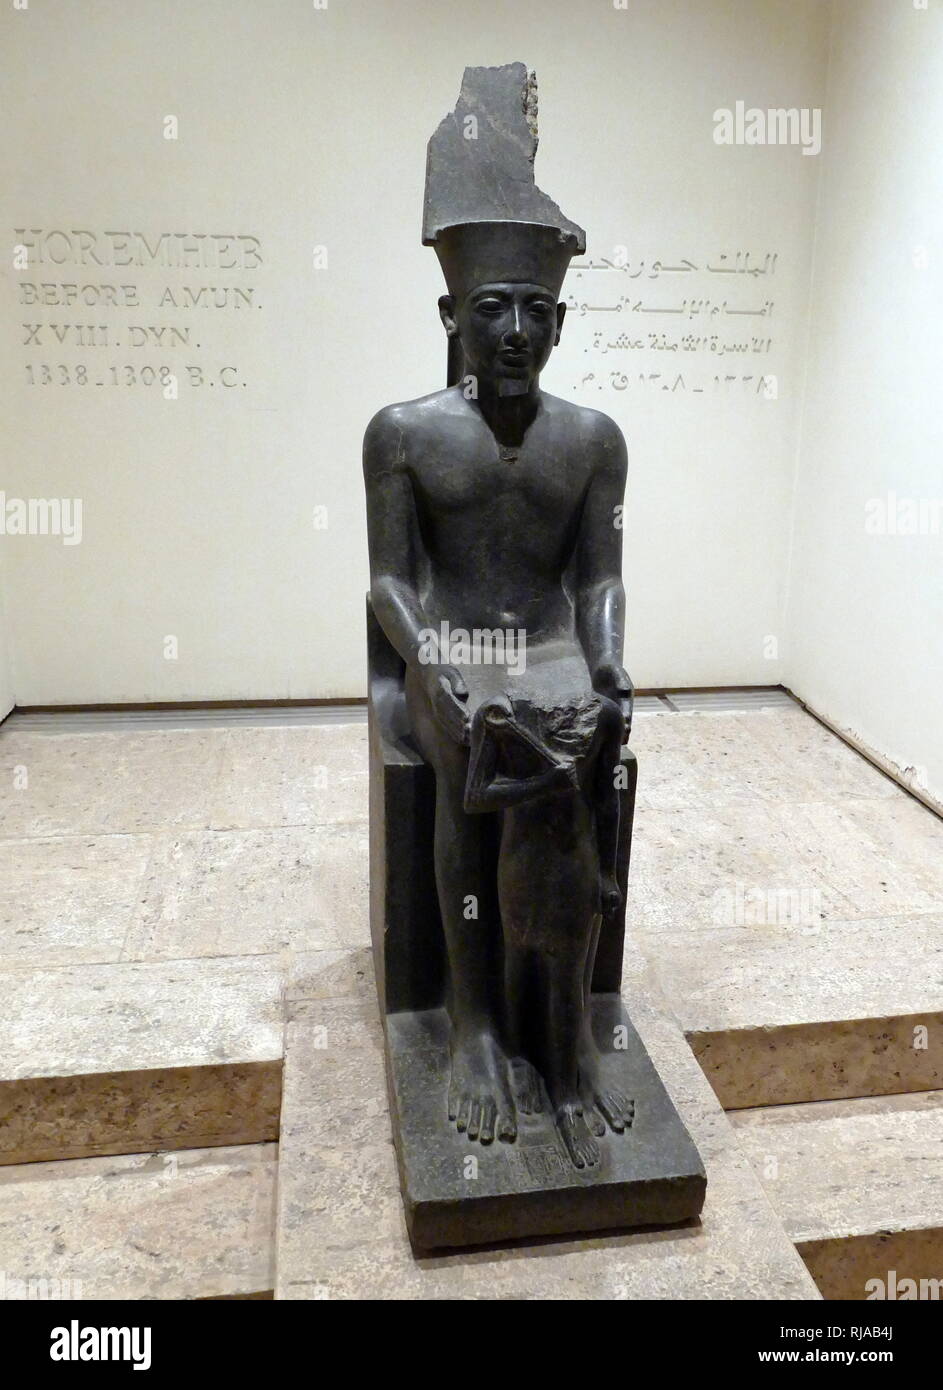 Statue des Amun mit haremhab vor ihm. 18. Dynastie, Ägyptische. Amun war einer der acht alten ägyptischen Götter, die die Ogdoad von Hermopolis gebildet. Er war der Gott der Luft. Haremhab regierte 14 Jahre lang, zwischen 1319 v. Chr. und 1292 v. Chr. Stockfoto